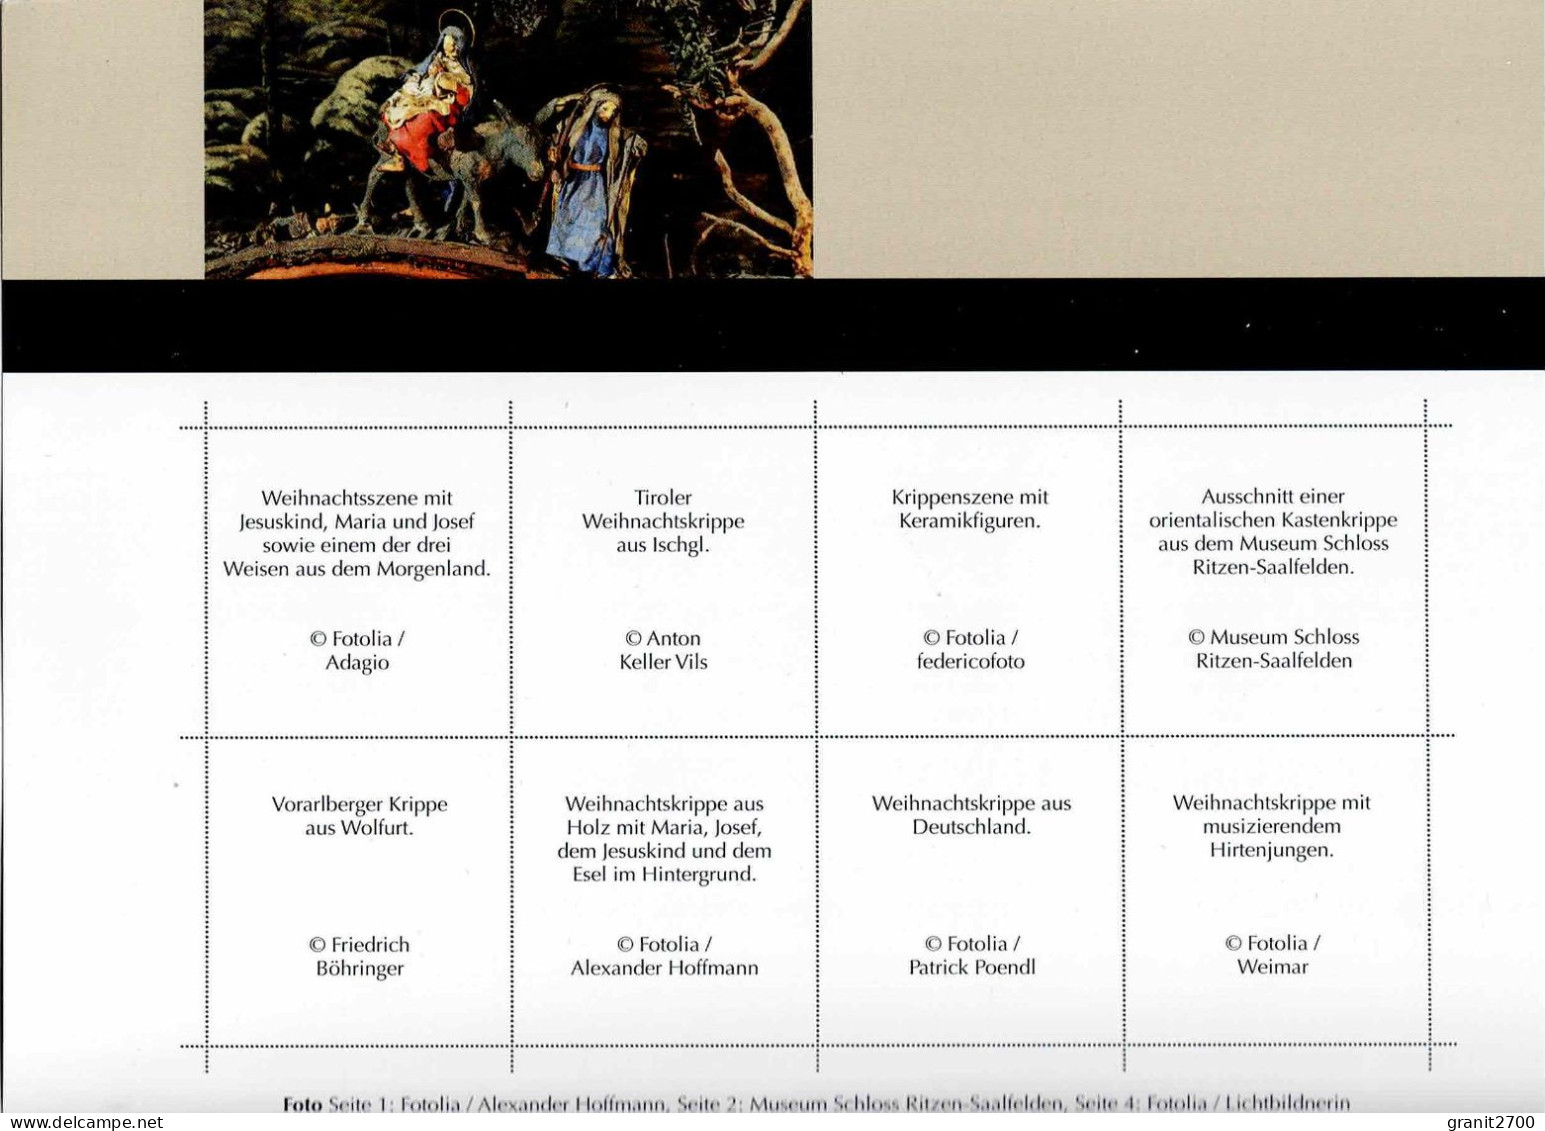 PM  Bogen Weihnachtskrippen  - Marken Edition 8    Lt. Scan Postfrisch - Personalisierte Briefmarken